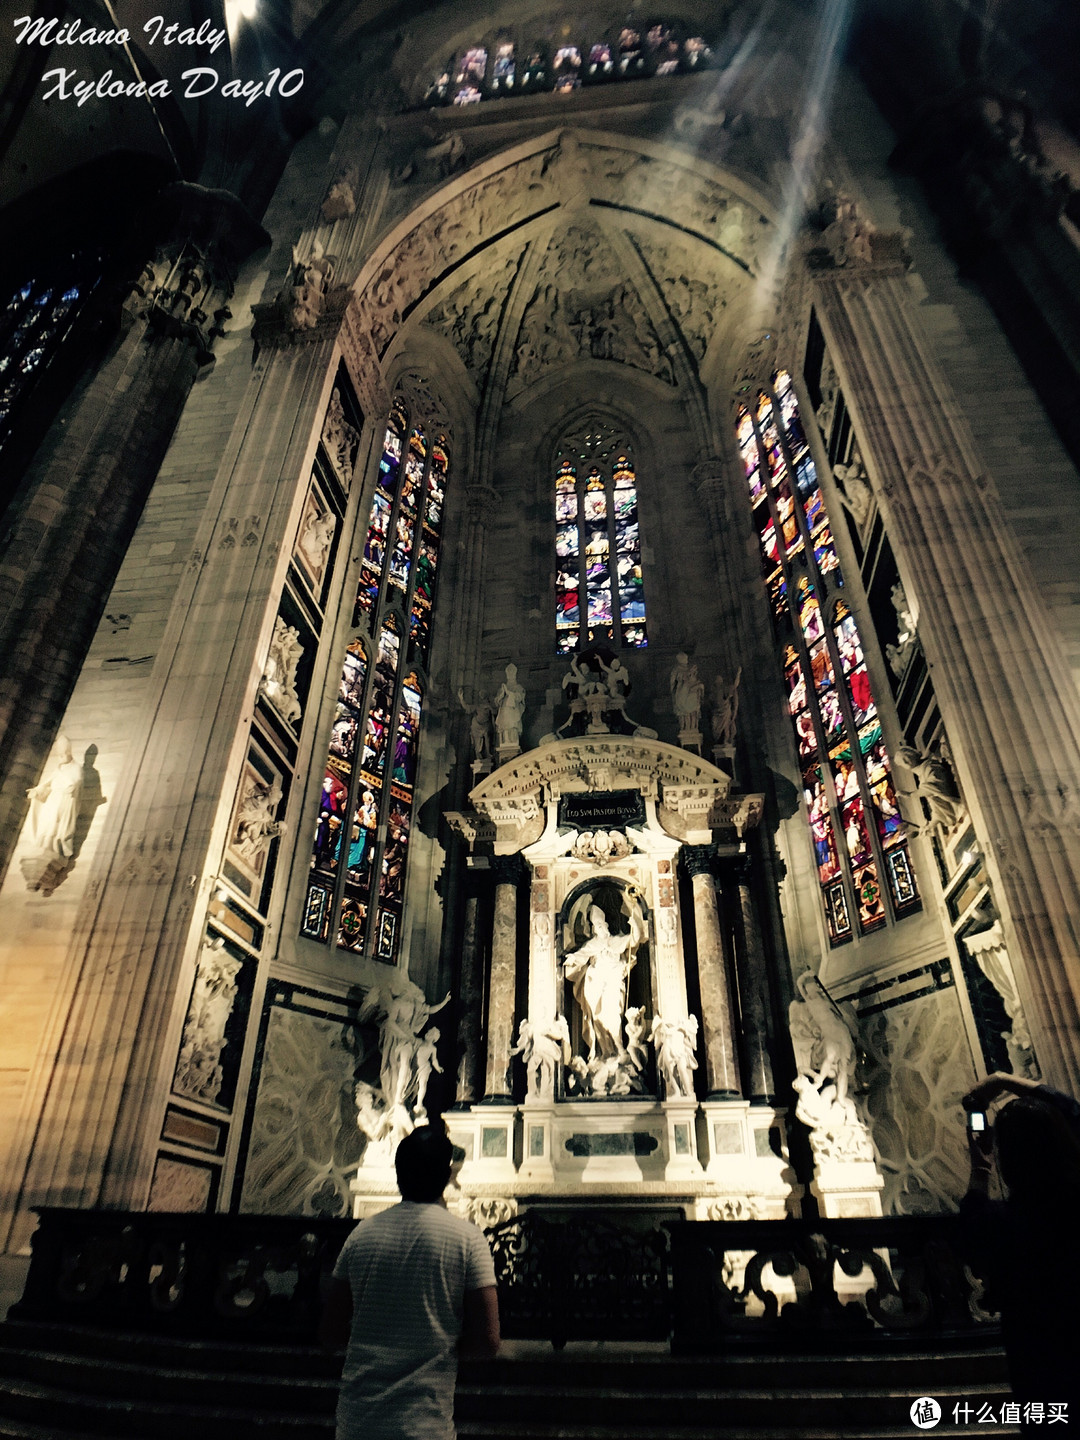 阳光透过彩色玻璃，为米兰大教堂打上一层圣神的光晕